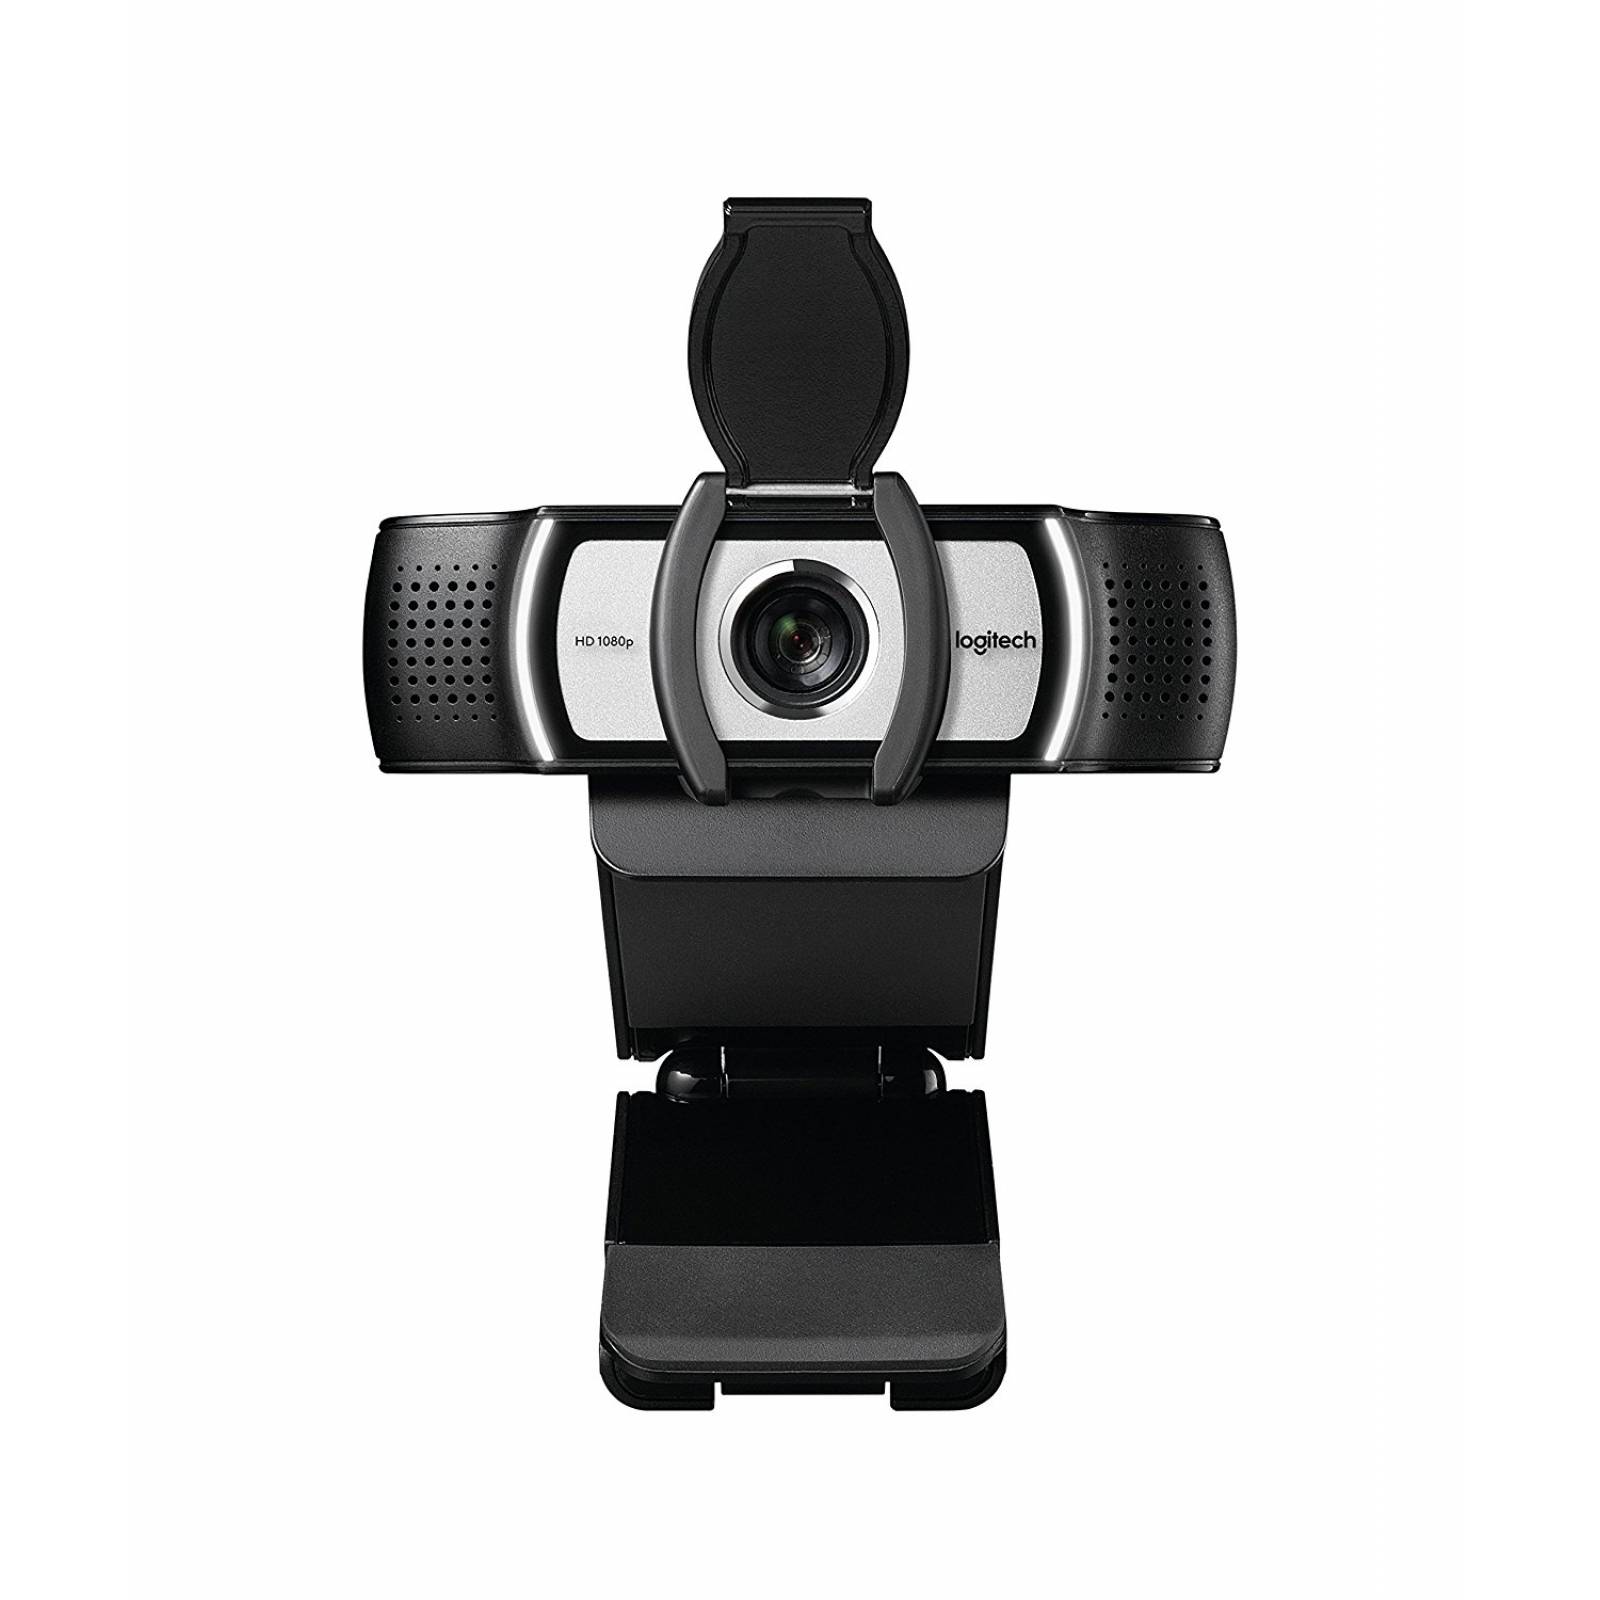 B:Logitech C930e 1080p HD Video Webcam - vista extendida 90 gr